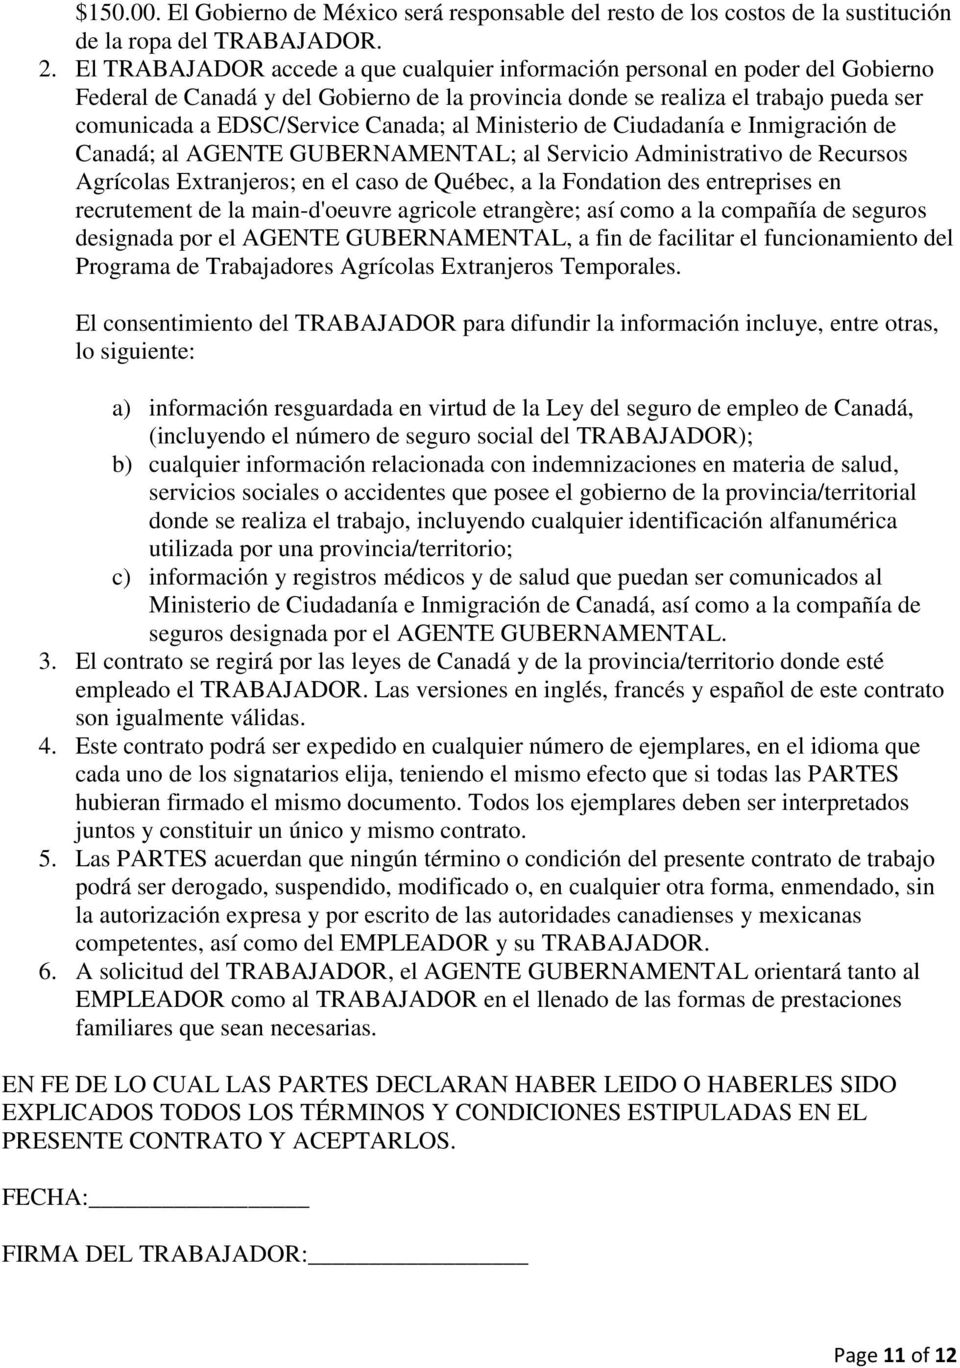 Canada; al Ministerio de Ciudadanía e Inmigración de Canadá; al AGENTE GUBERNAMENTAL; al Servicio Administrativo de Recursos Agrícolas Extranjeros; en el caso de Québec, a la Fondation des